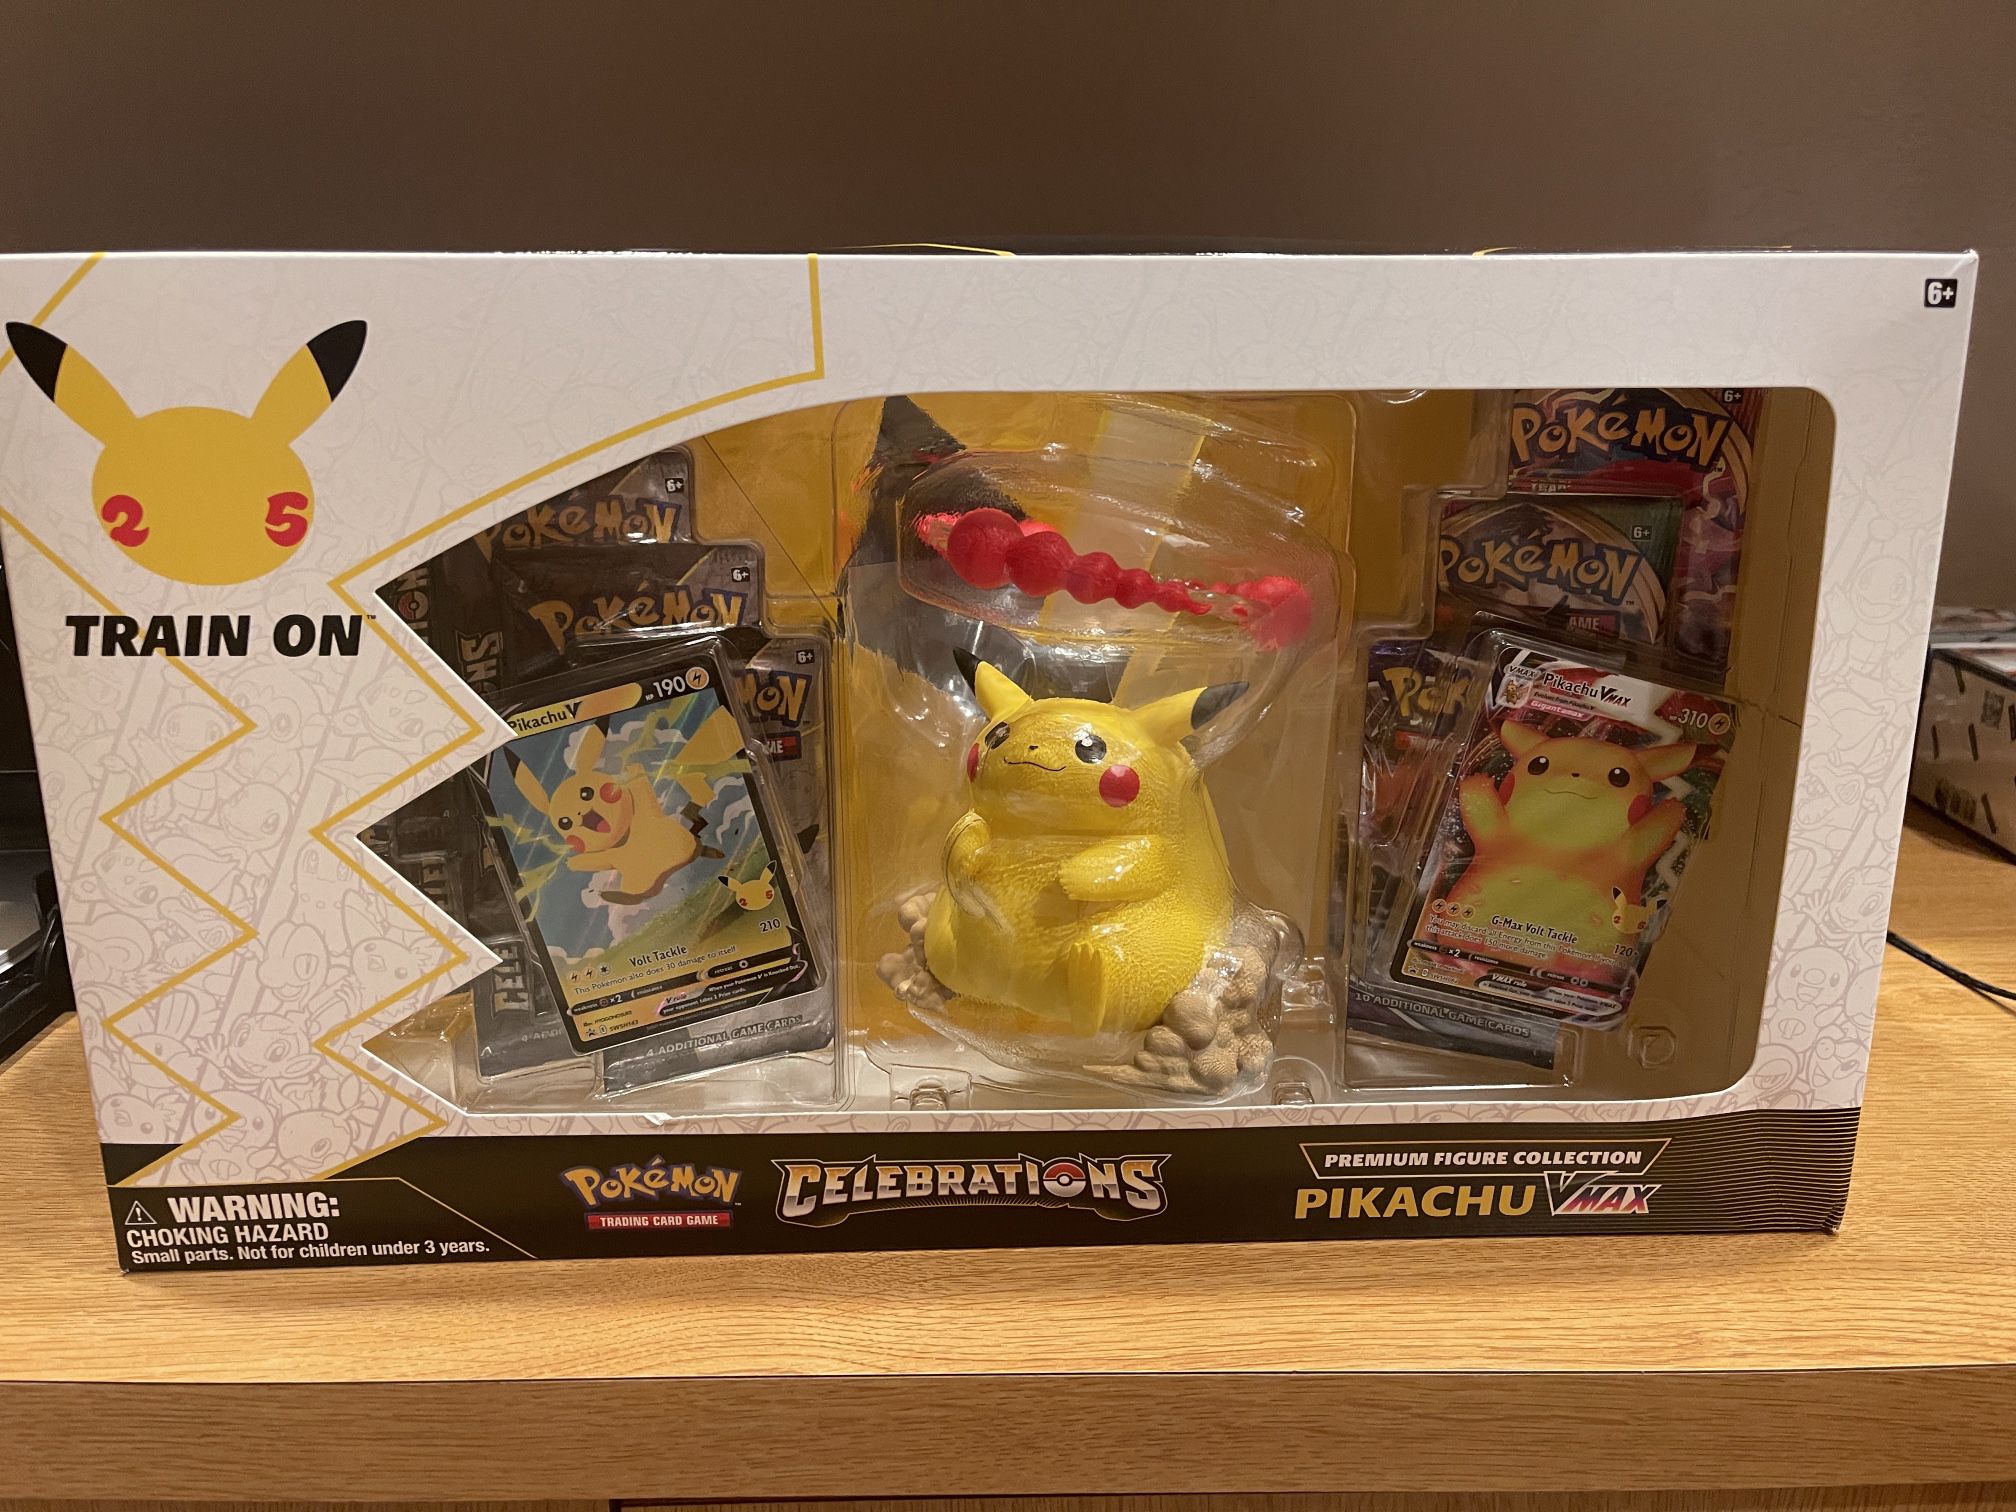 Pokemon Celebrations Pikachu VMAX Premium Figure Collection 